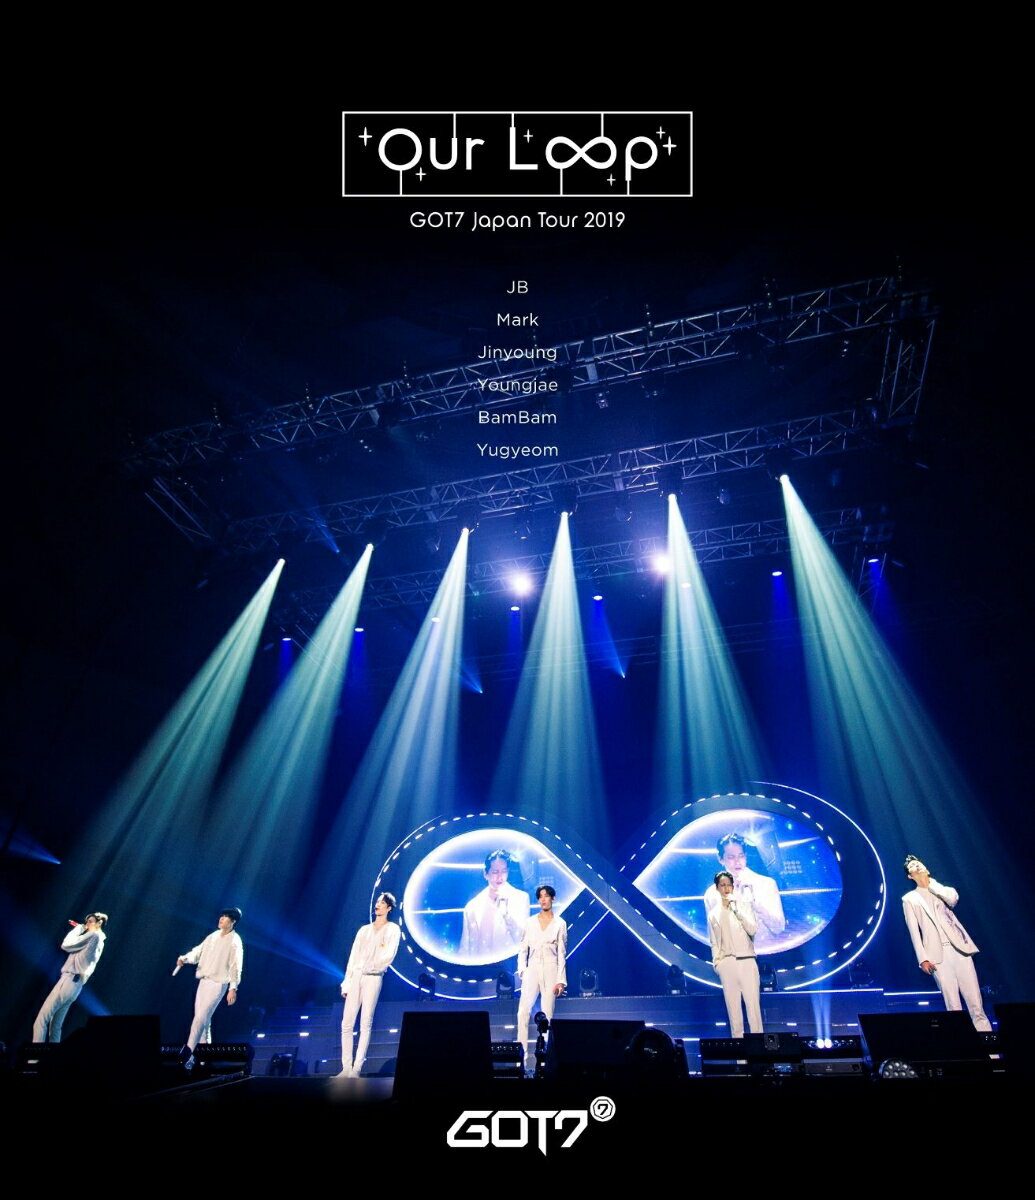 GOT7 Japan Tour 2019 ”Our Loop” GOT7